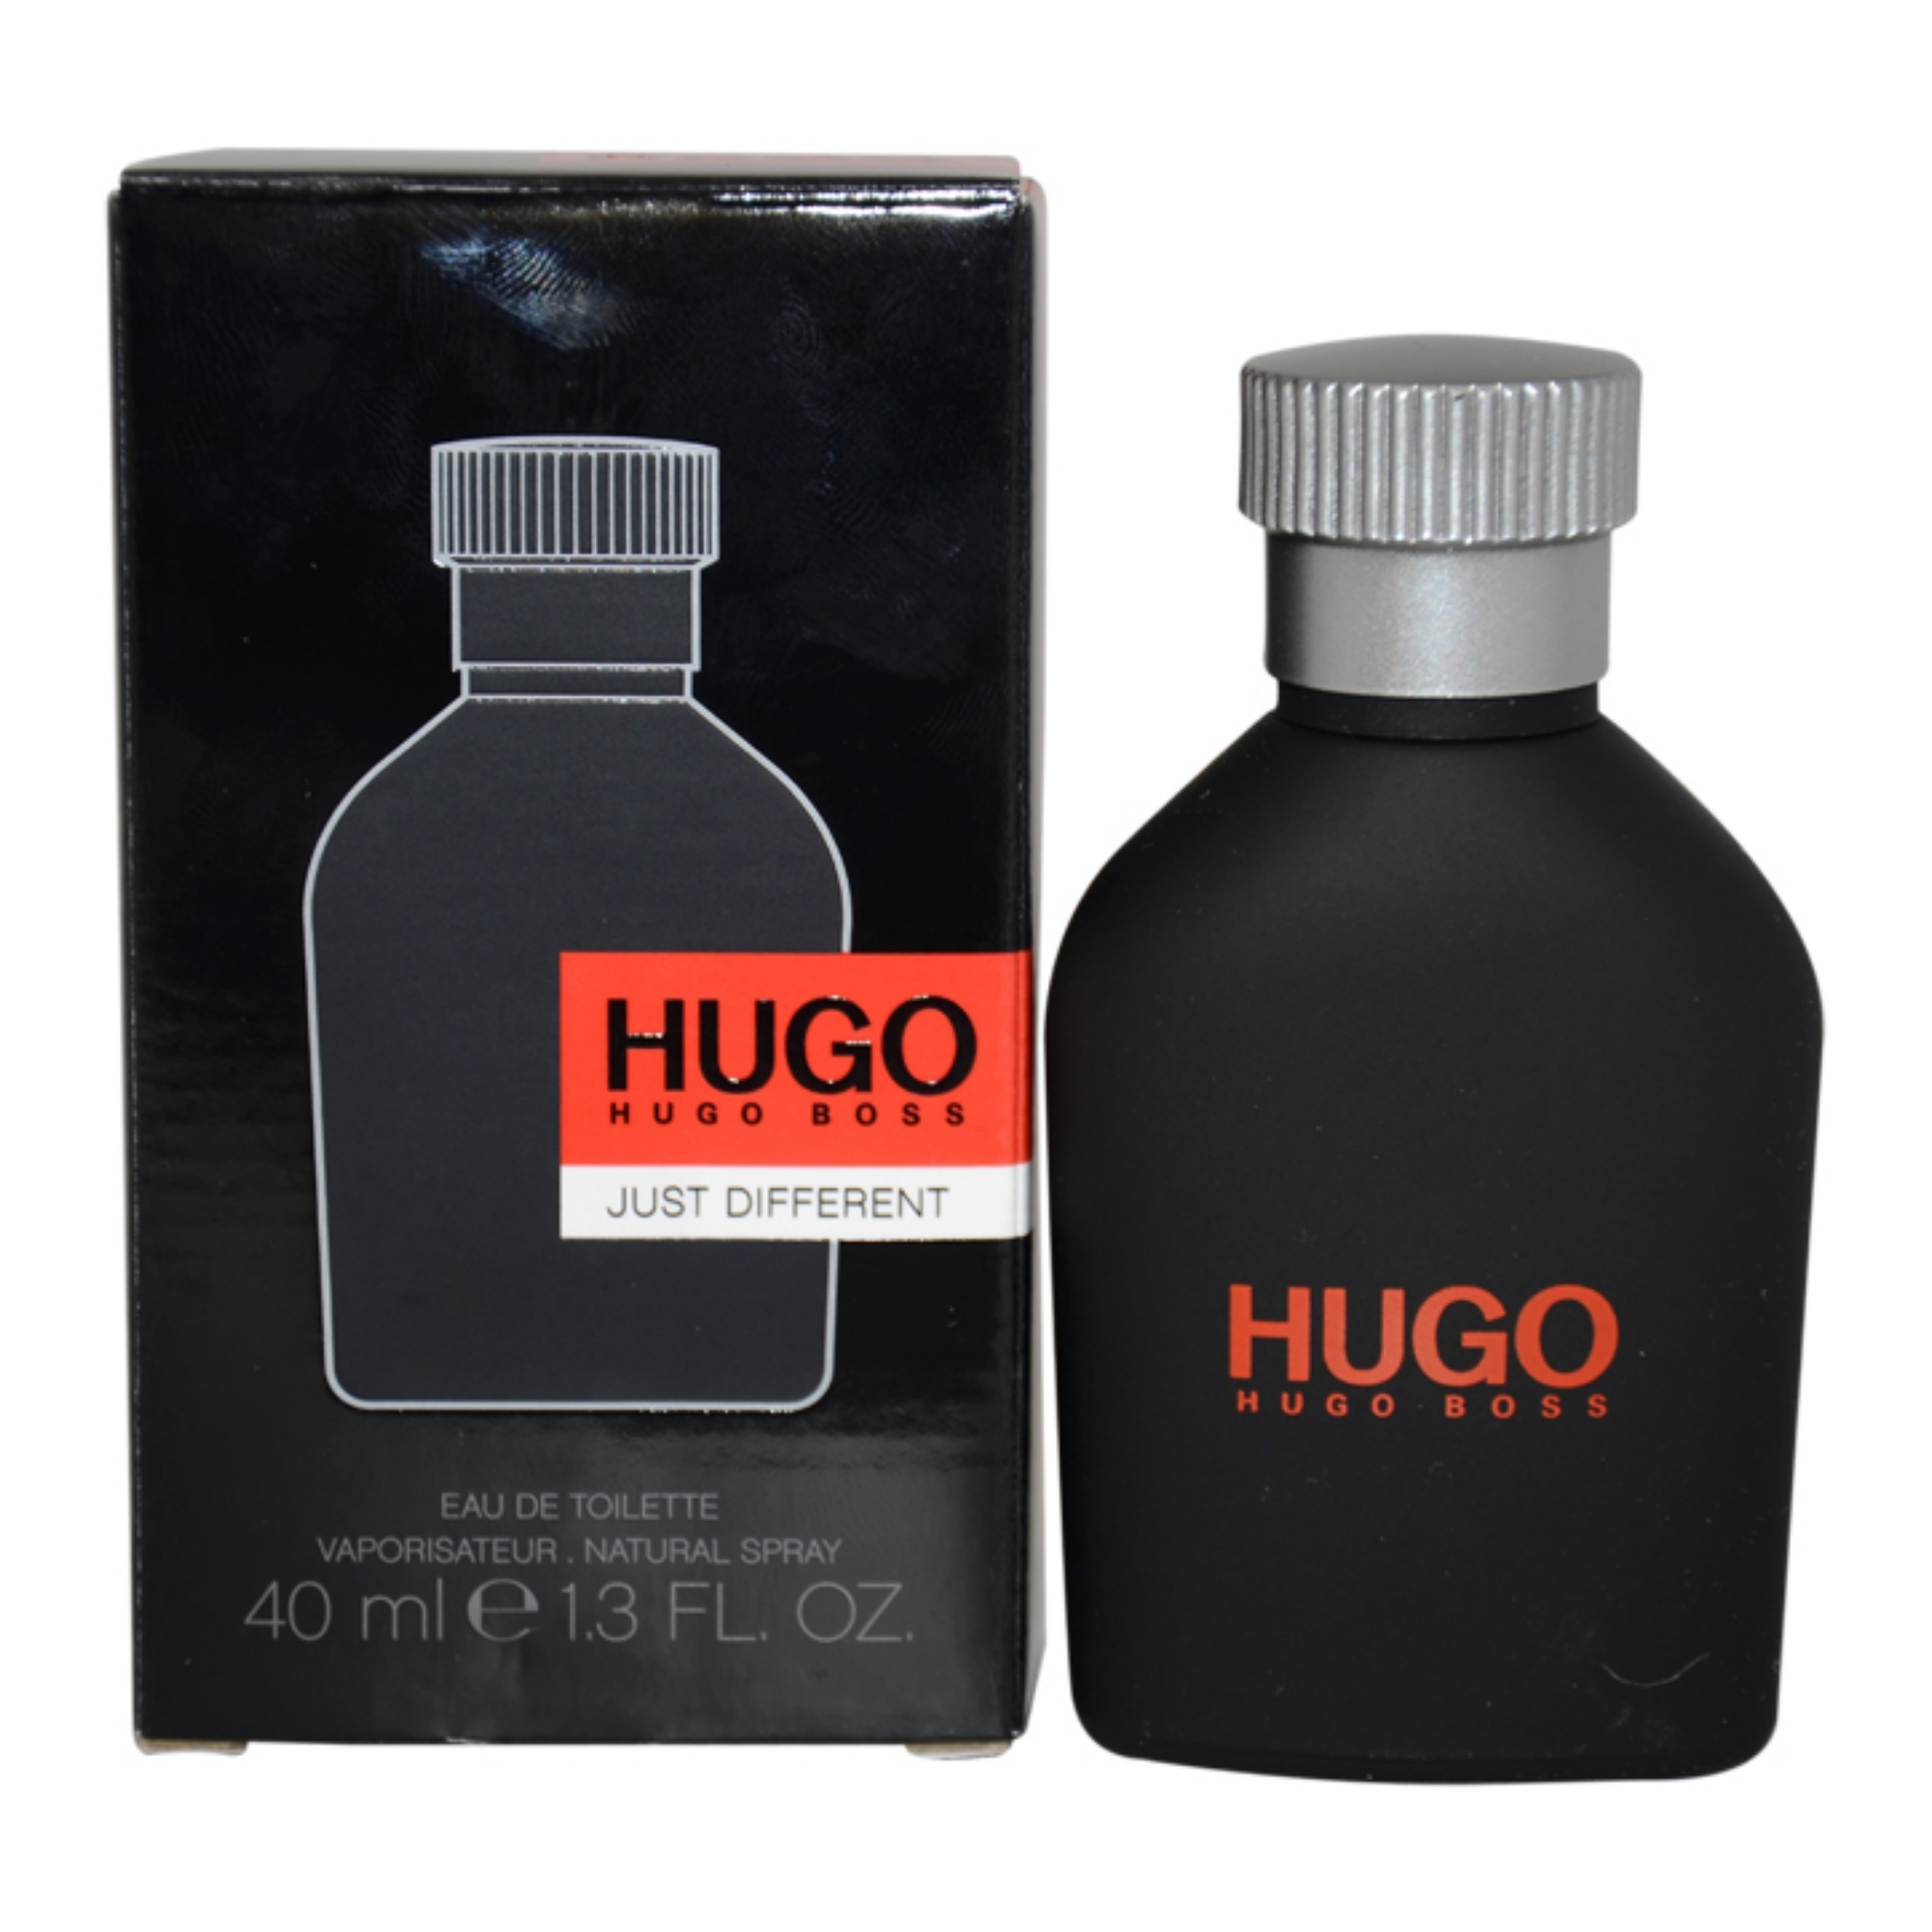 HUGO JUST DIFFERENT by Hugo Boss for Men - 1.3 oz EDT Spray